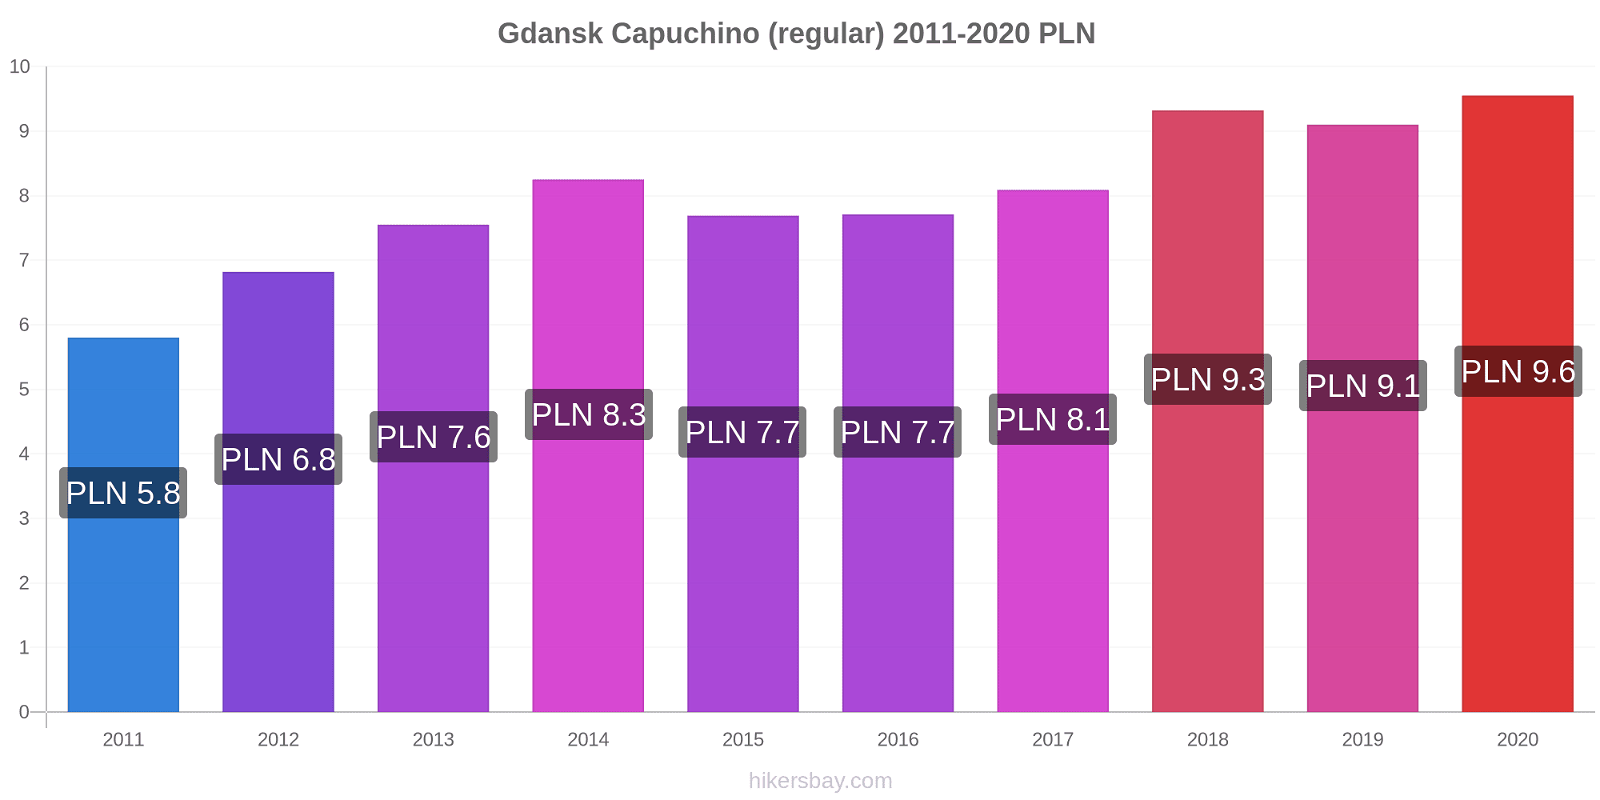 Gdansk cambios de precios Capuchino (regular) hikersbay.com